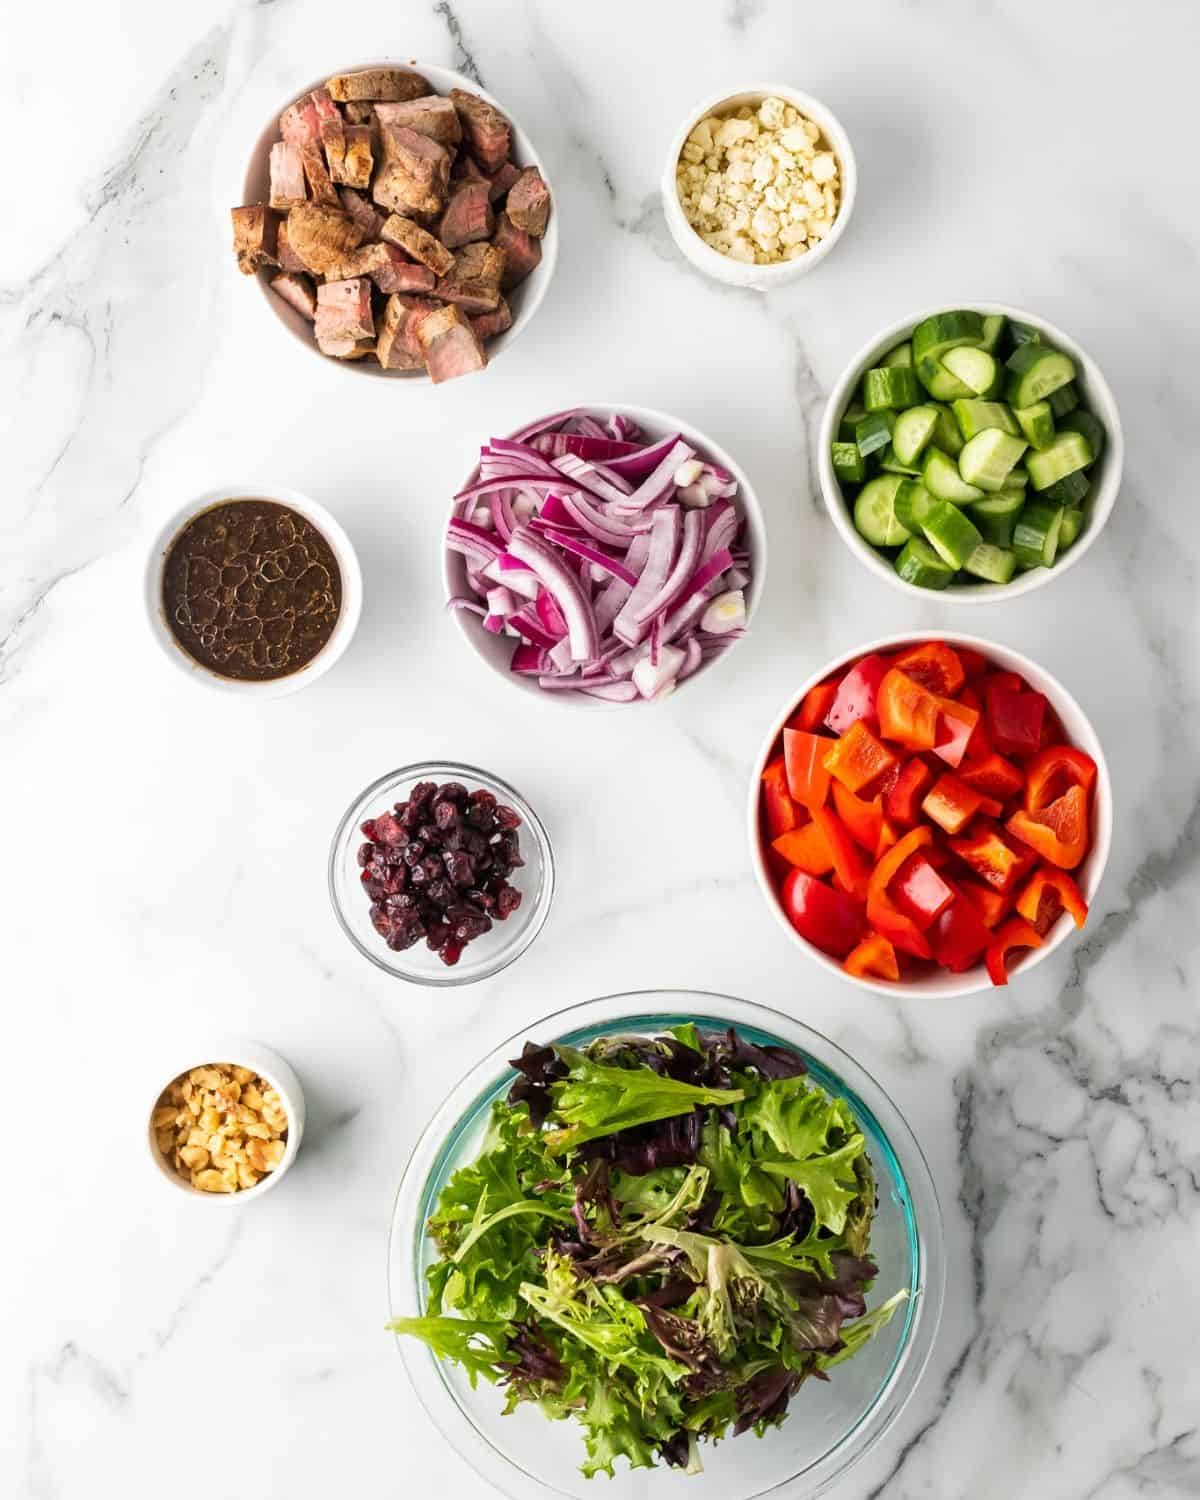 ingredients to make steak salad in a jar